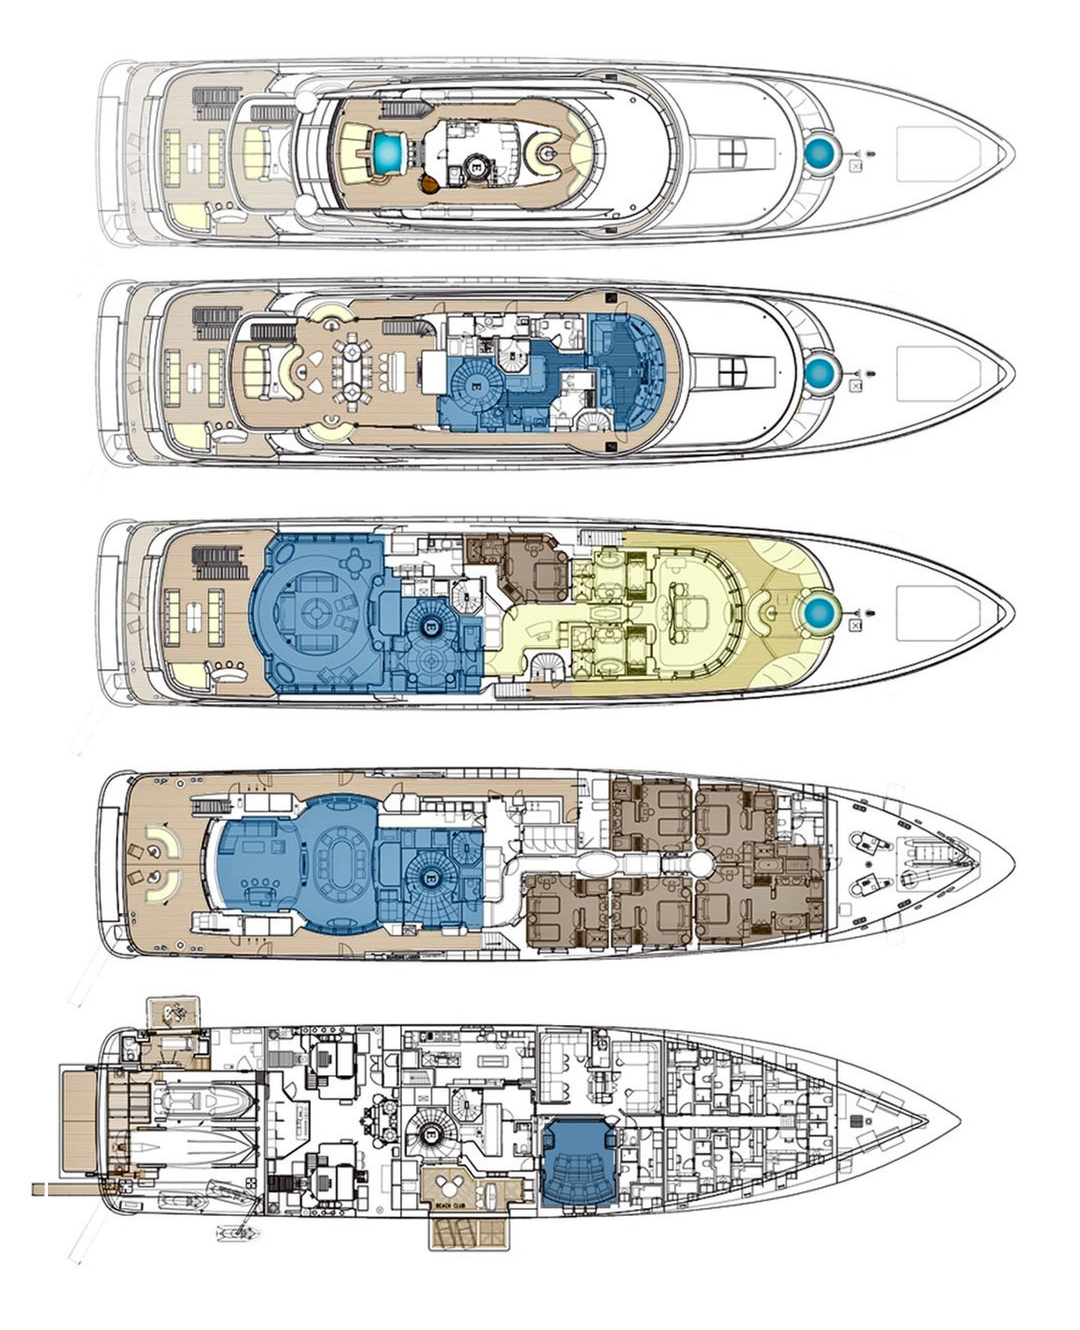 Планы палуб. Яхта Ace 85 m план палуб. Яхта Кисмет план палуб. Яхта Octopus планировка палуб. Планировки 5 палубных яхт.